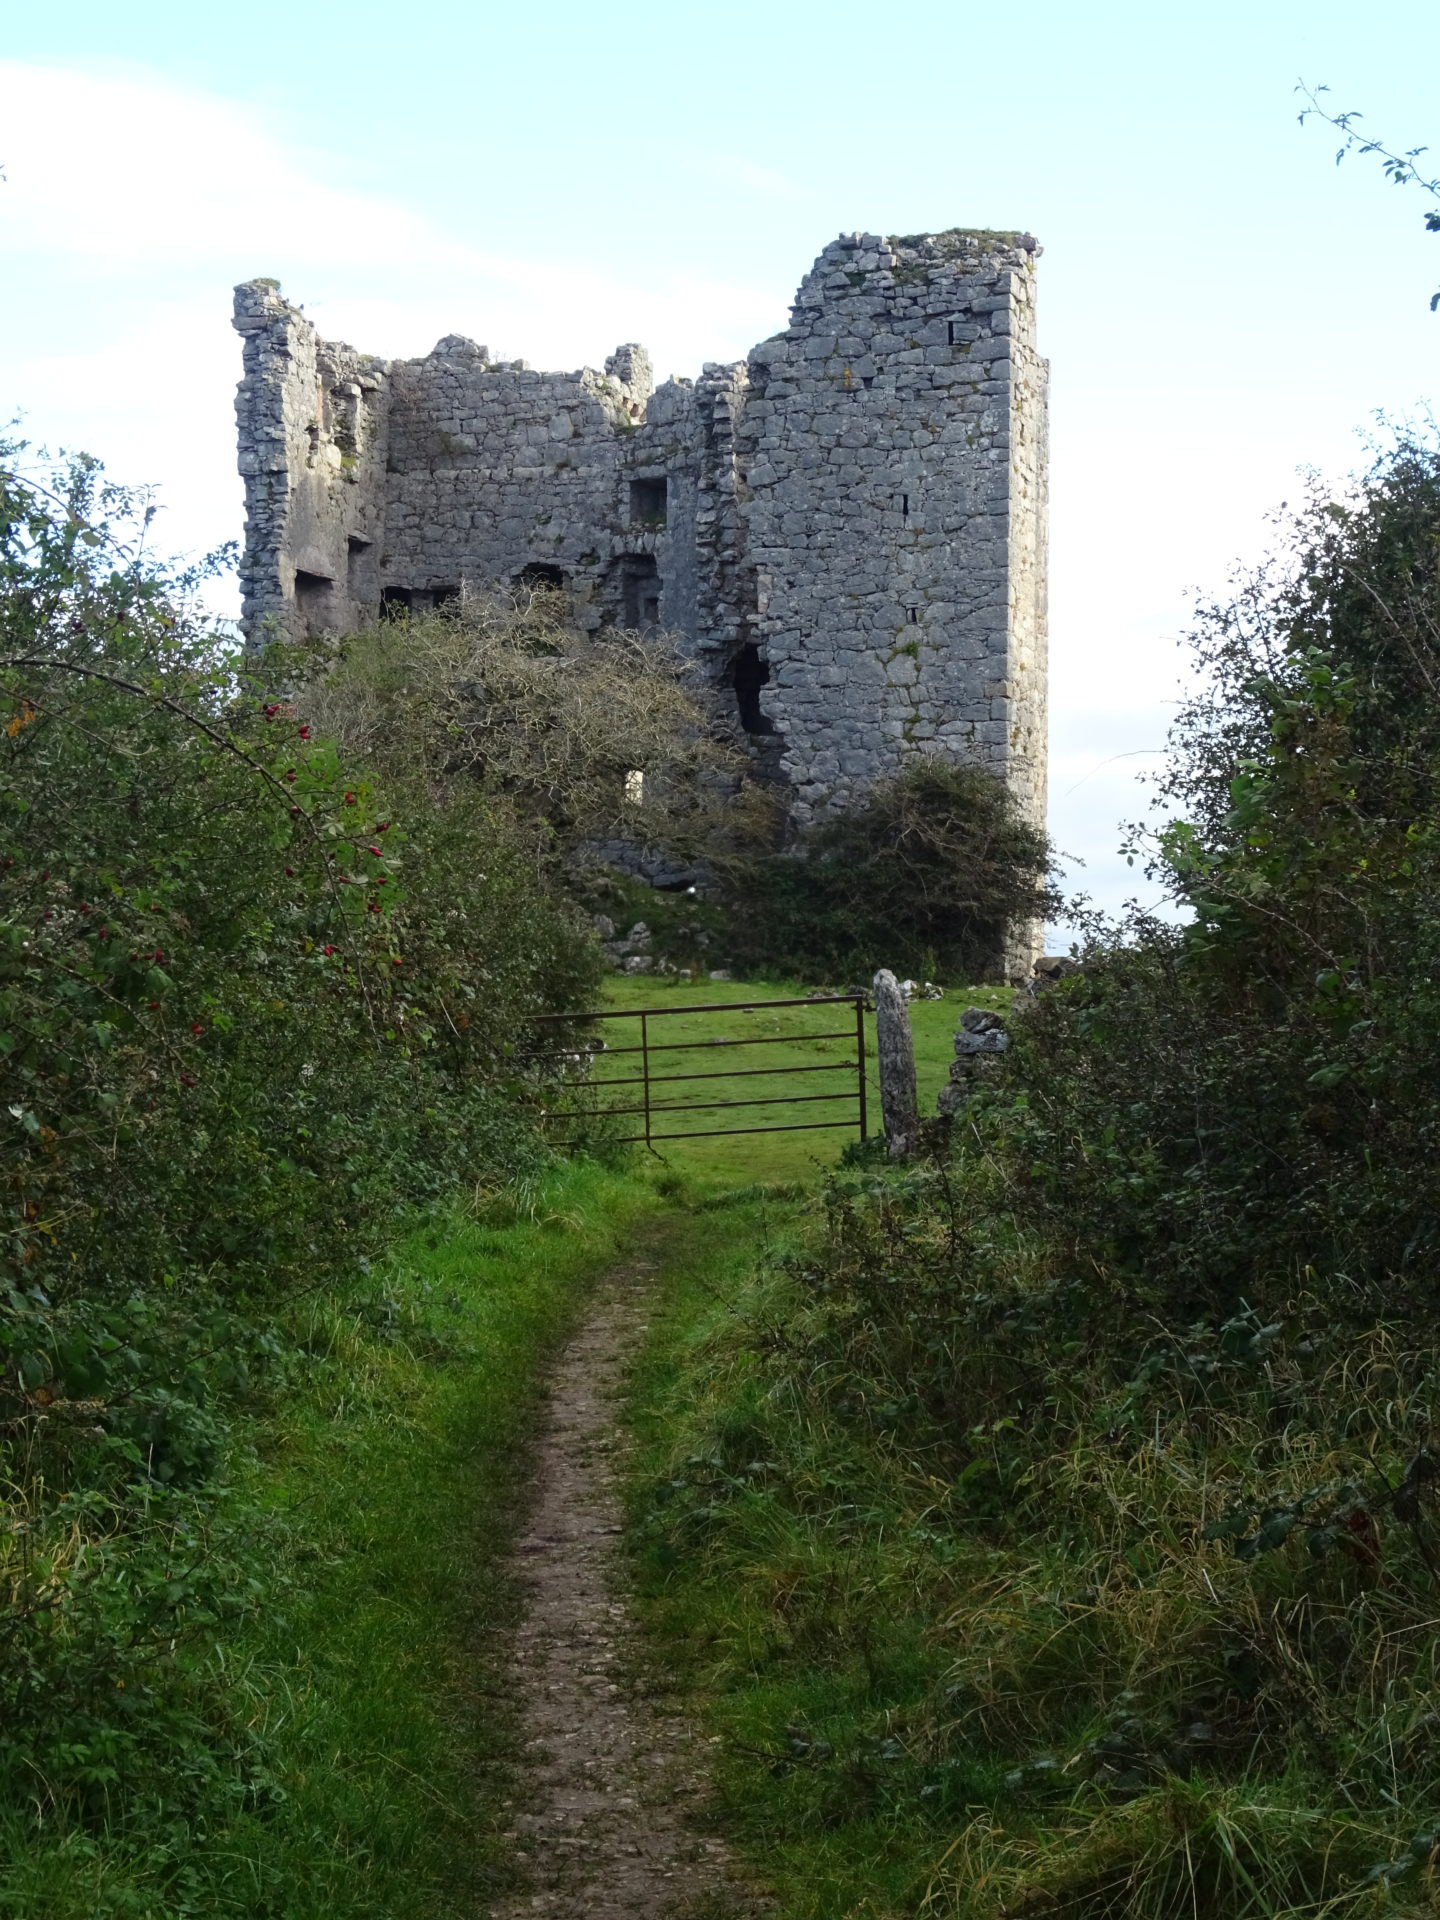 Arnside’s Old Walls – 15c Pele Tower